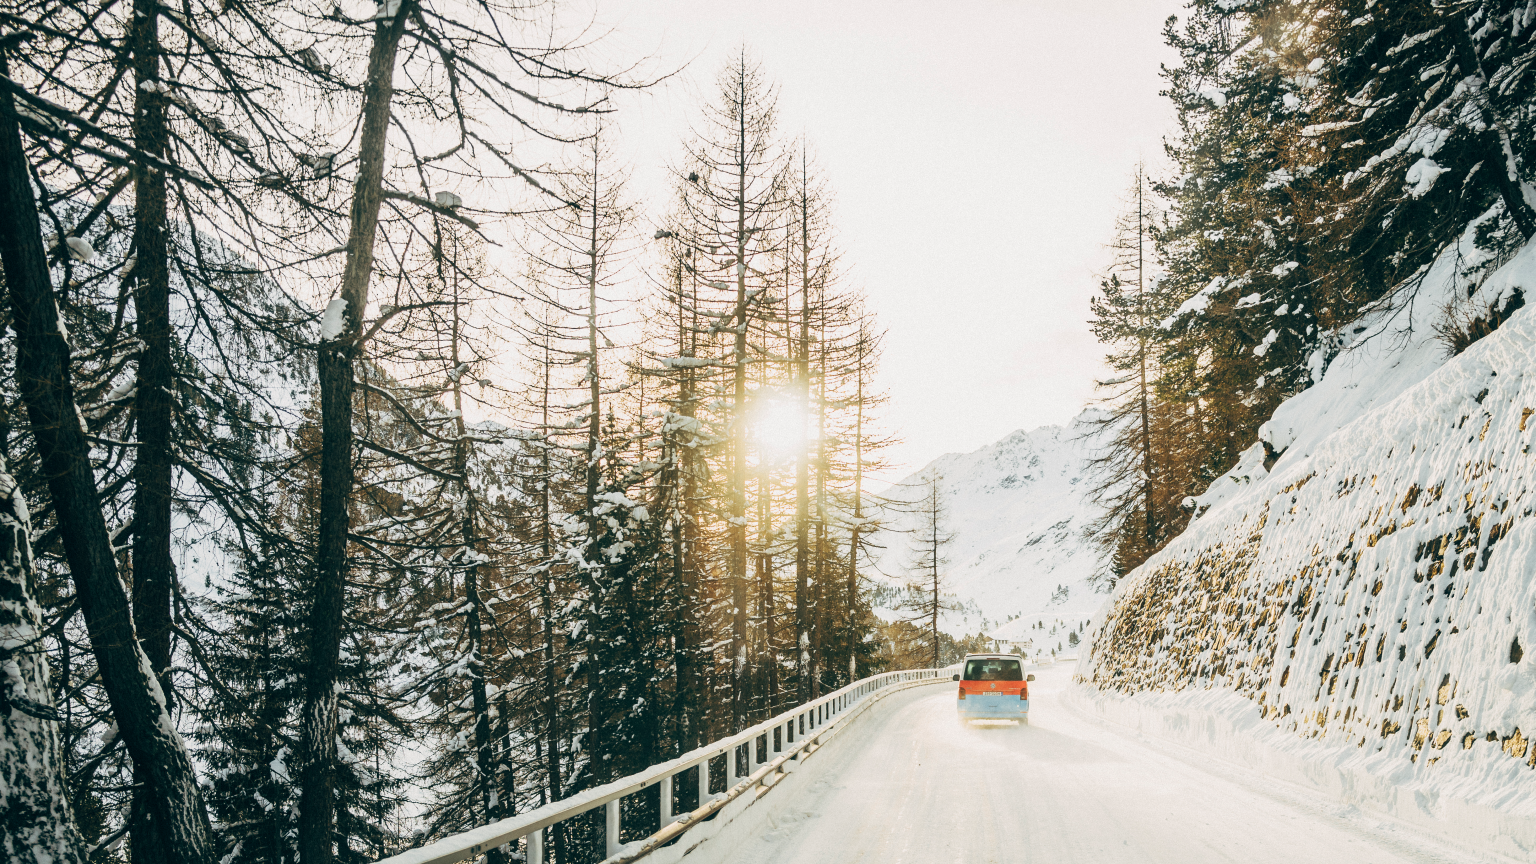 Ein Volkswagen Nutzfahrzeug fährt eine winterliche Straße entlang